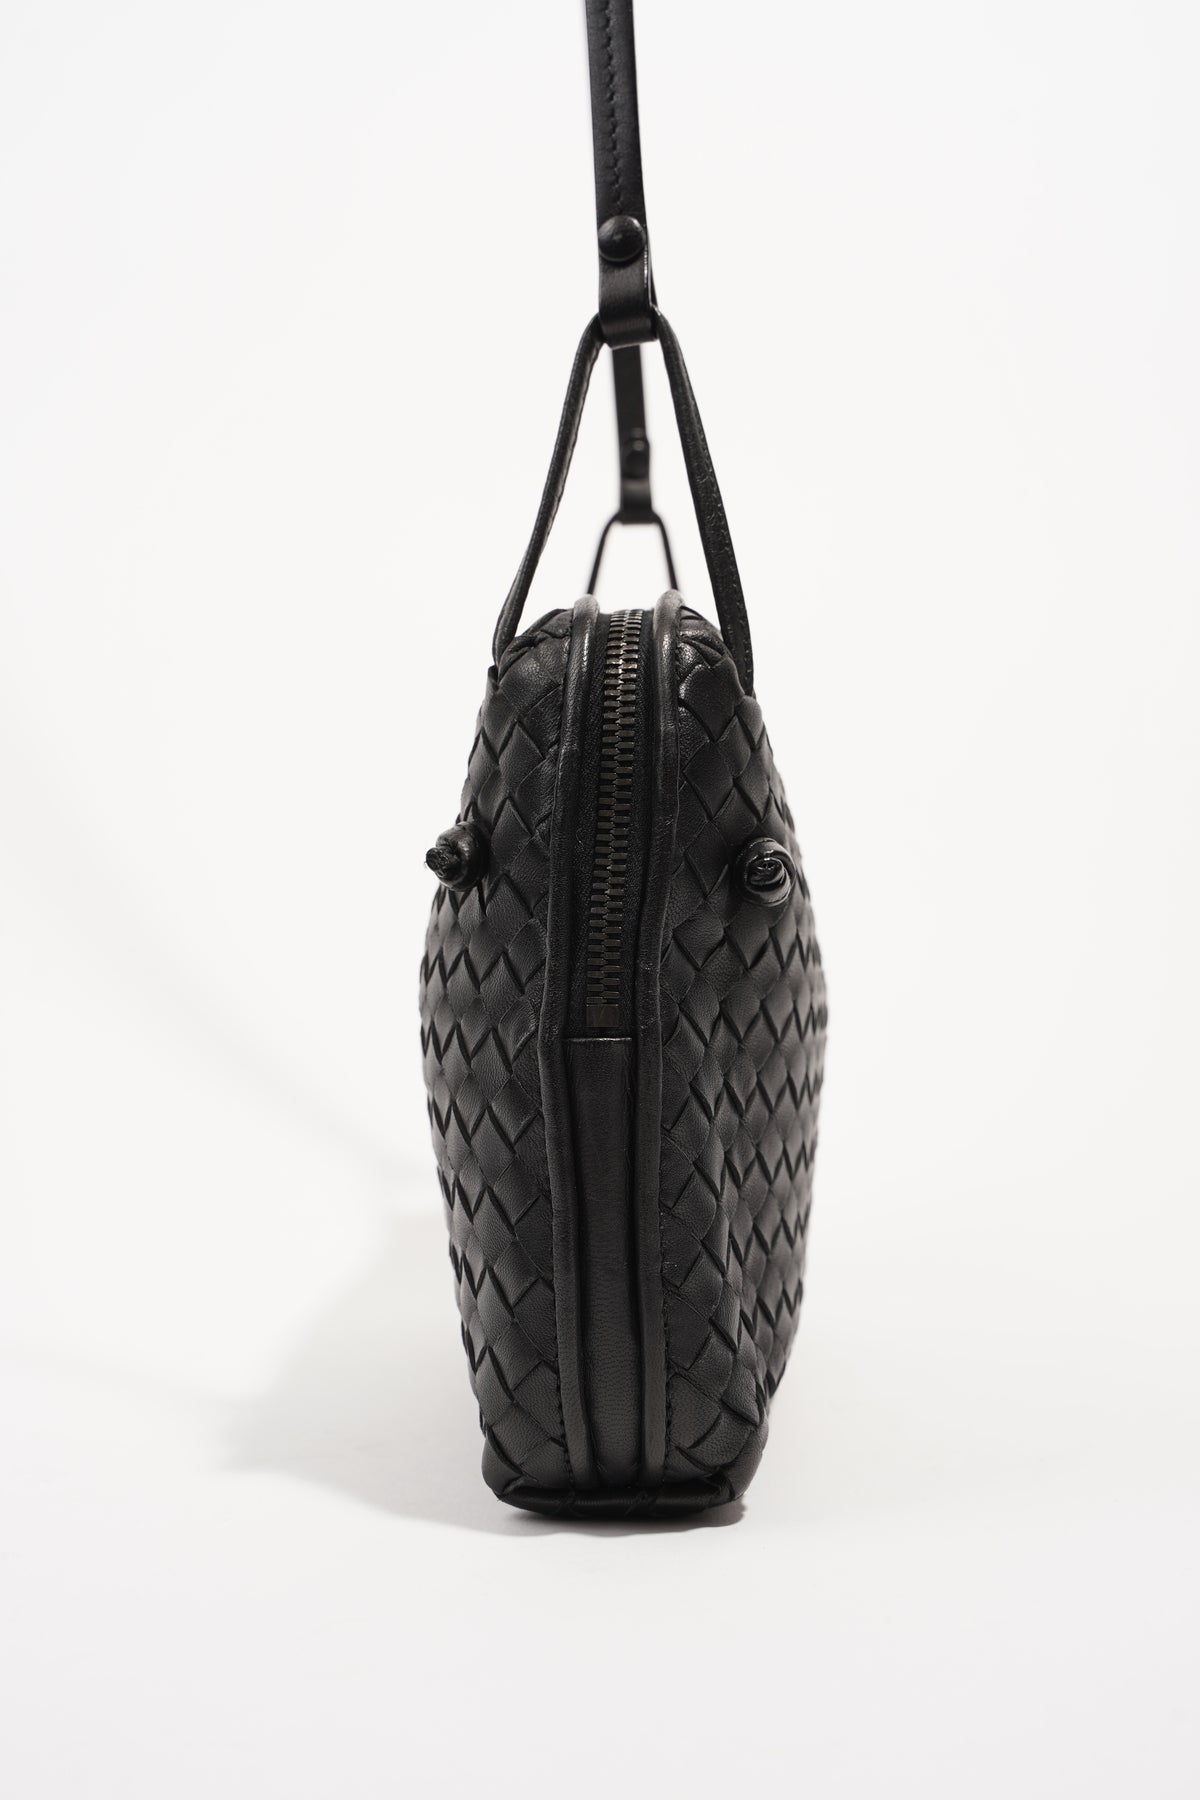 Bottega Veneta Black Intrecciato Leather Double Zip Nodini Crossbody Bag  Bottega Veneta | The Luxury Closet